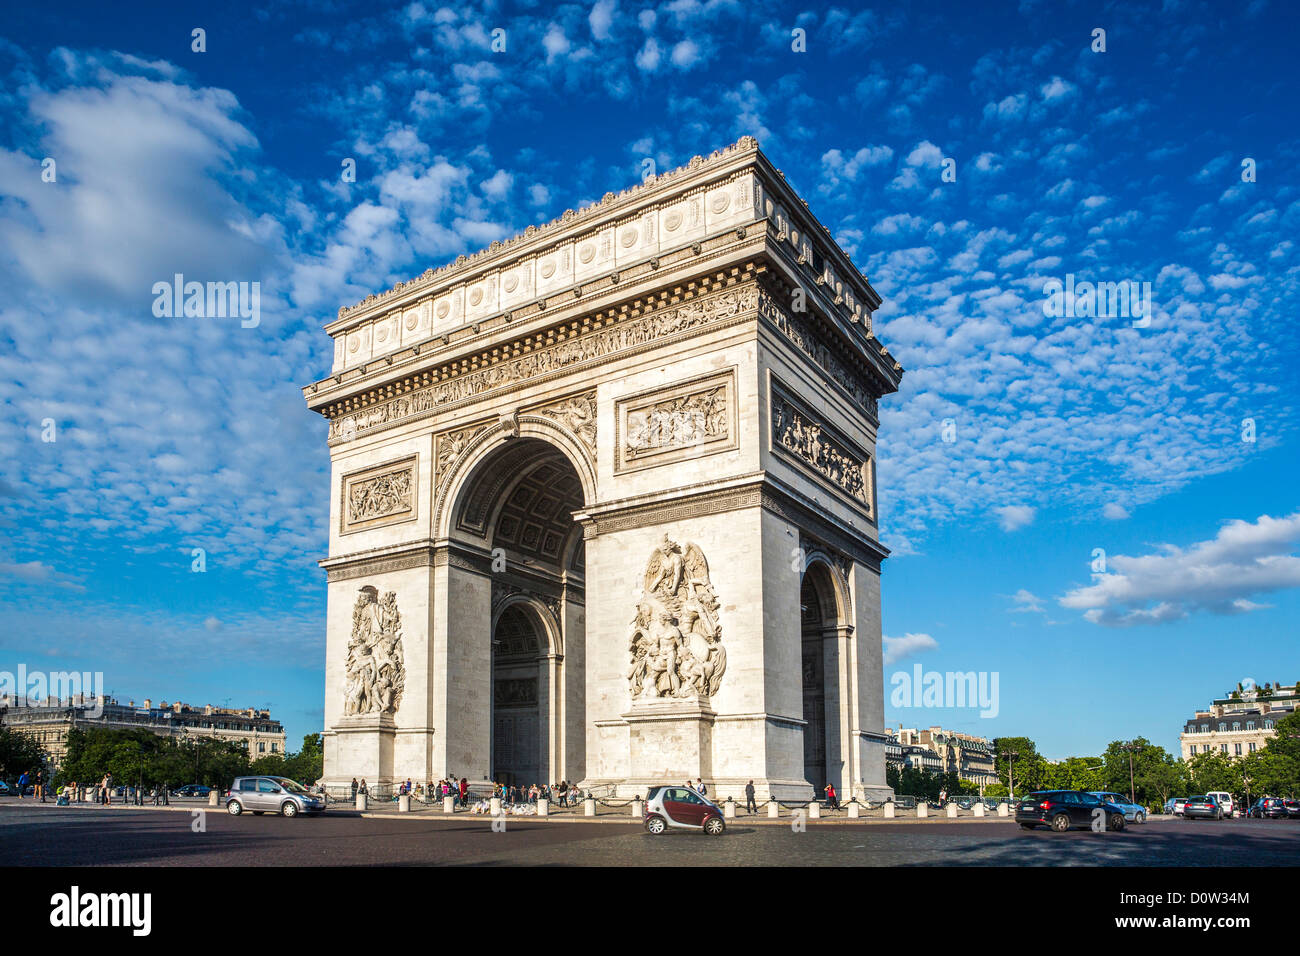 France, Europe, voyage, Paris, Ville, Arc de Triomphe, Arc de Triomphe, architecture, art, avenue, grand, bâtiment, bâtiments, memori Banque D'Images